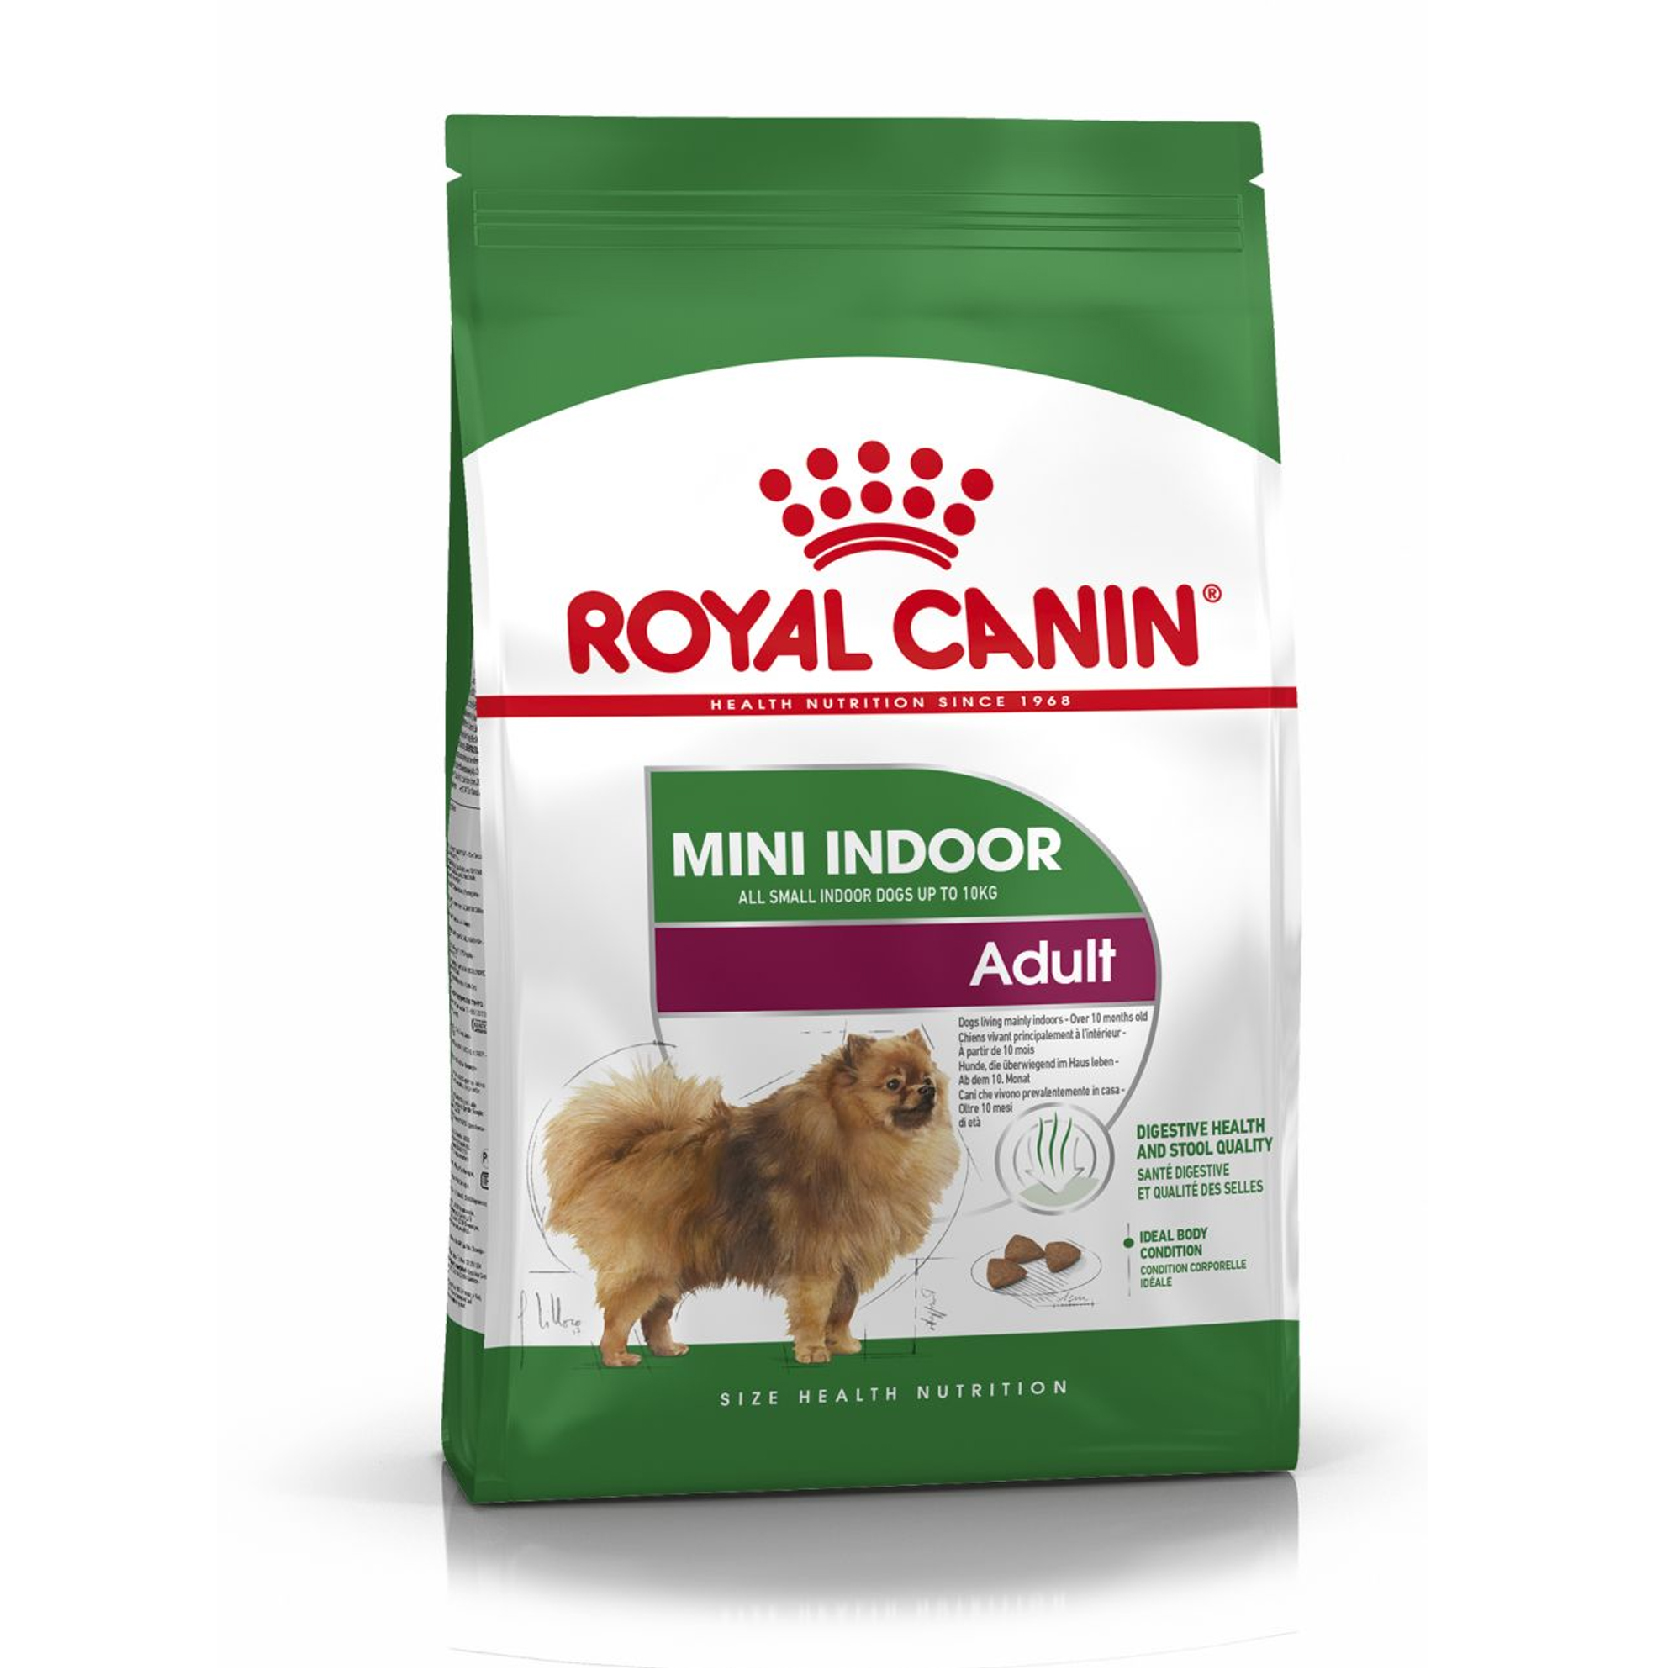 Royal Canin Mini Indoor Adult อาหารสุนัขโต ขนาดเล็ก เลี้ยงในบ้าน